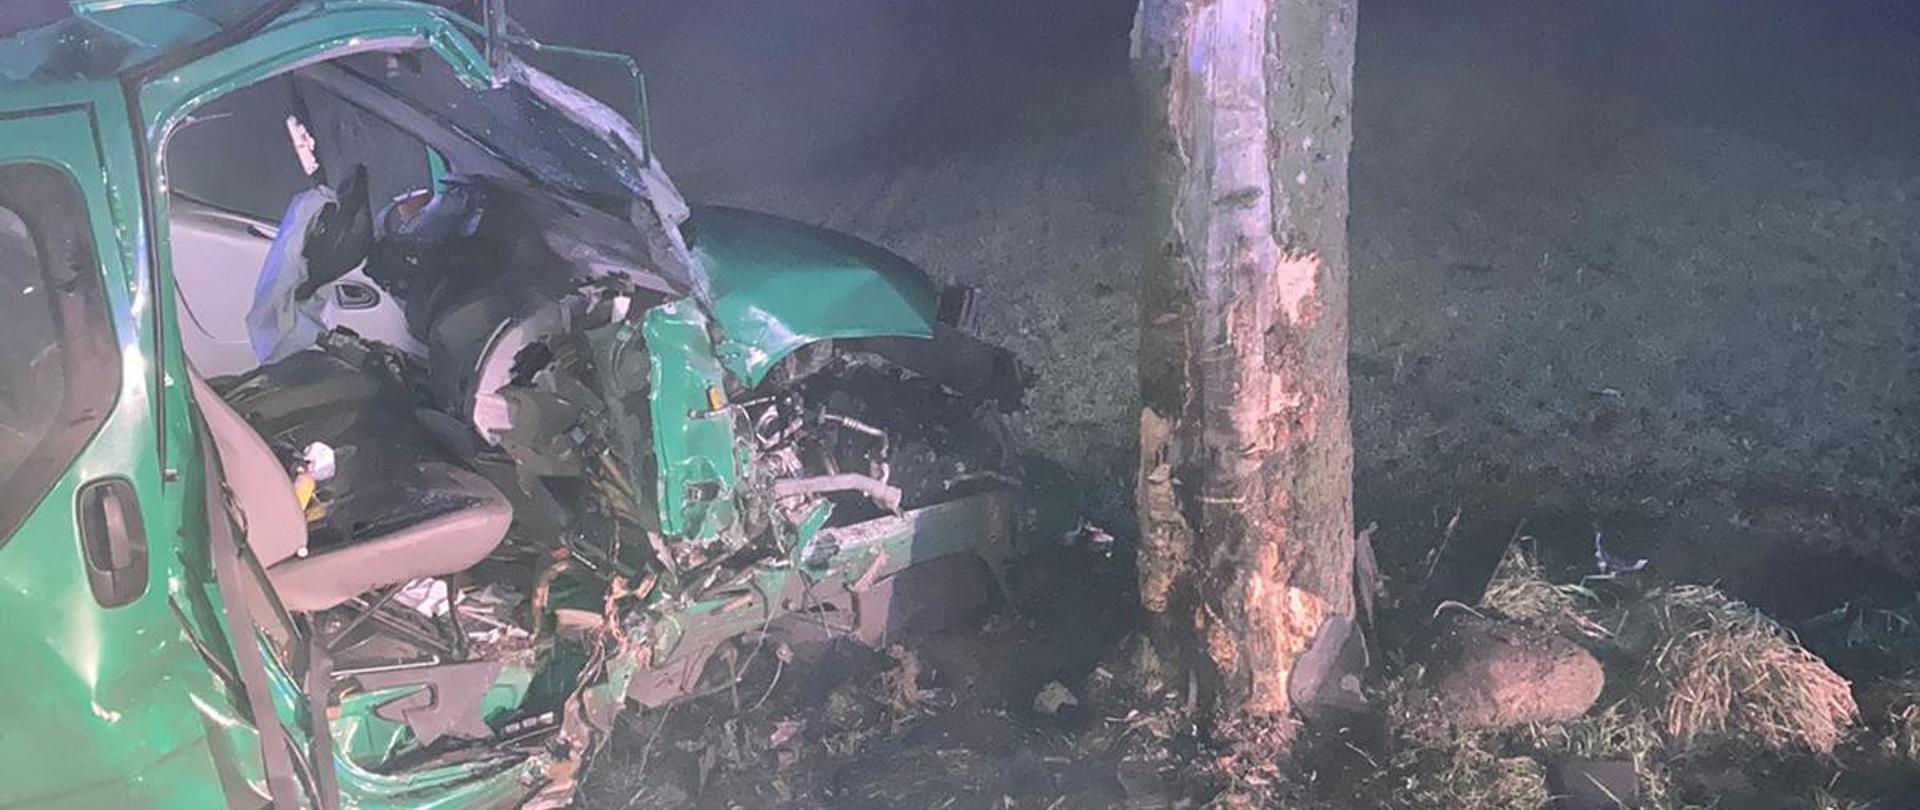 Na zdjęciu miejsce wypadku po uderzeniu w przydrożne drzewo. Widoczna jest uszkodzona prawa strona pojazdu dostawczego Opel VIVARO koloru zielonego. Widoczne jest również drzewo po uderzeniu z pojazdem, gdzie została uszkodzona kora drzewa. 